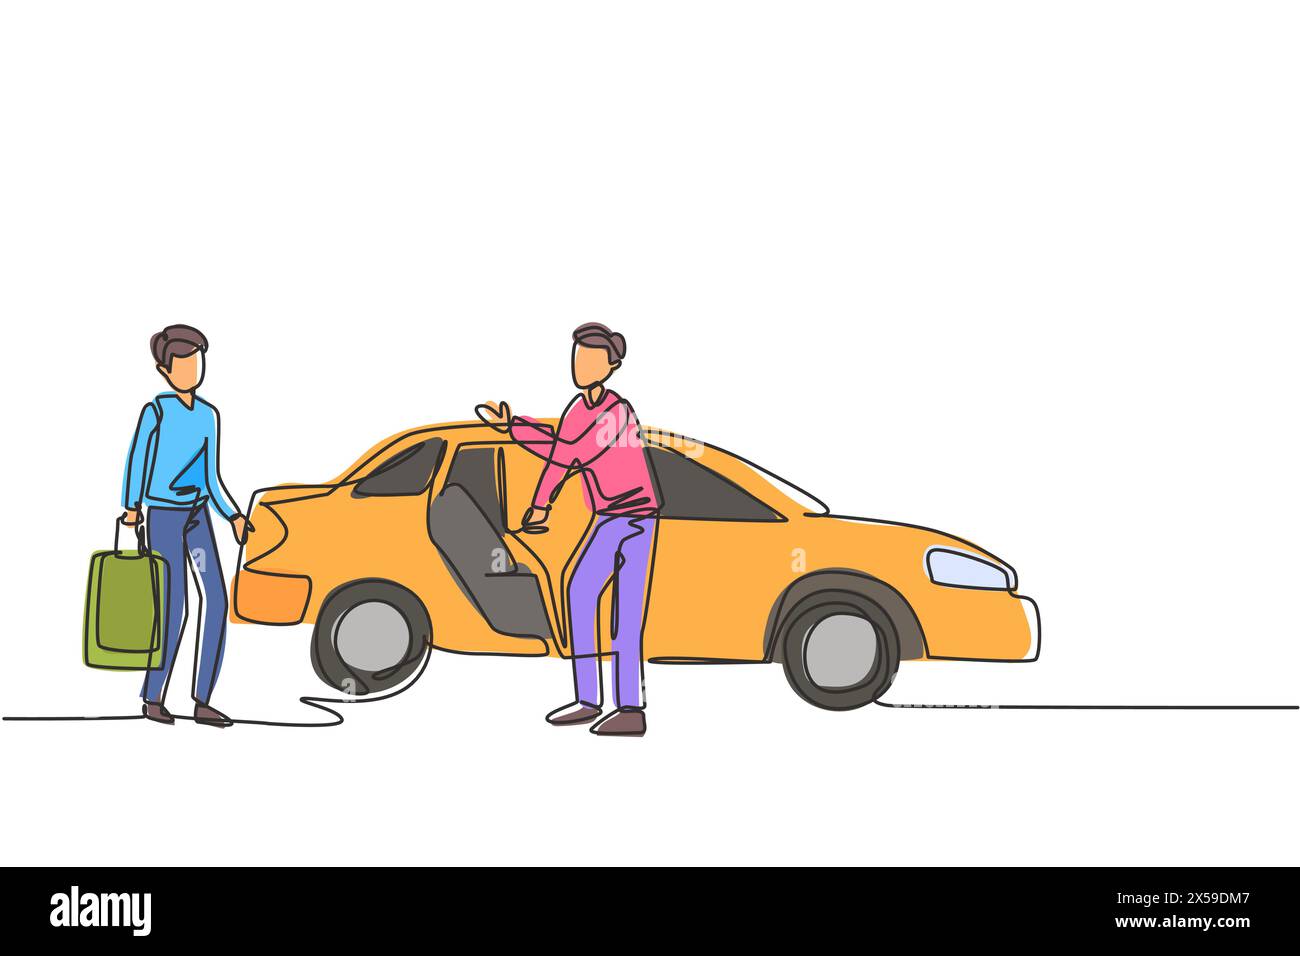 Eine einzige Zeichnung von männlichen Taxifahrern lädt potenzielle Passagiere ein, hineinzusteigen und sie an ihr Ziel zu bringen. Moderner Continuou Stock Vektor